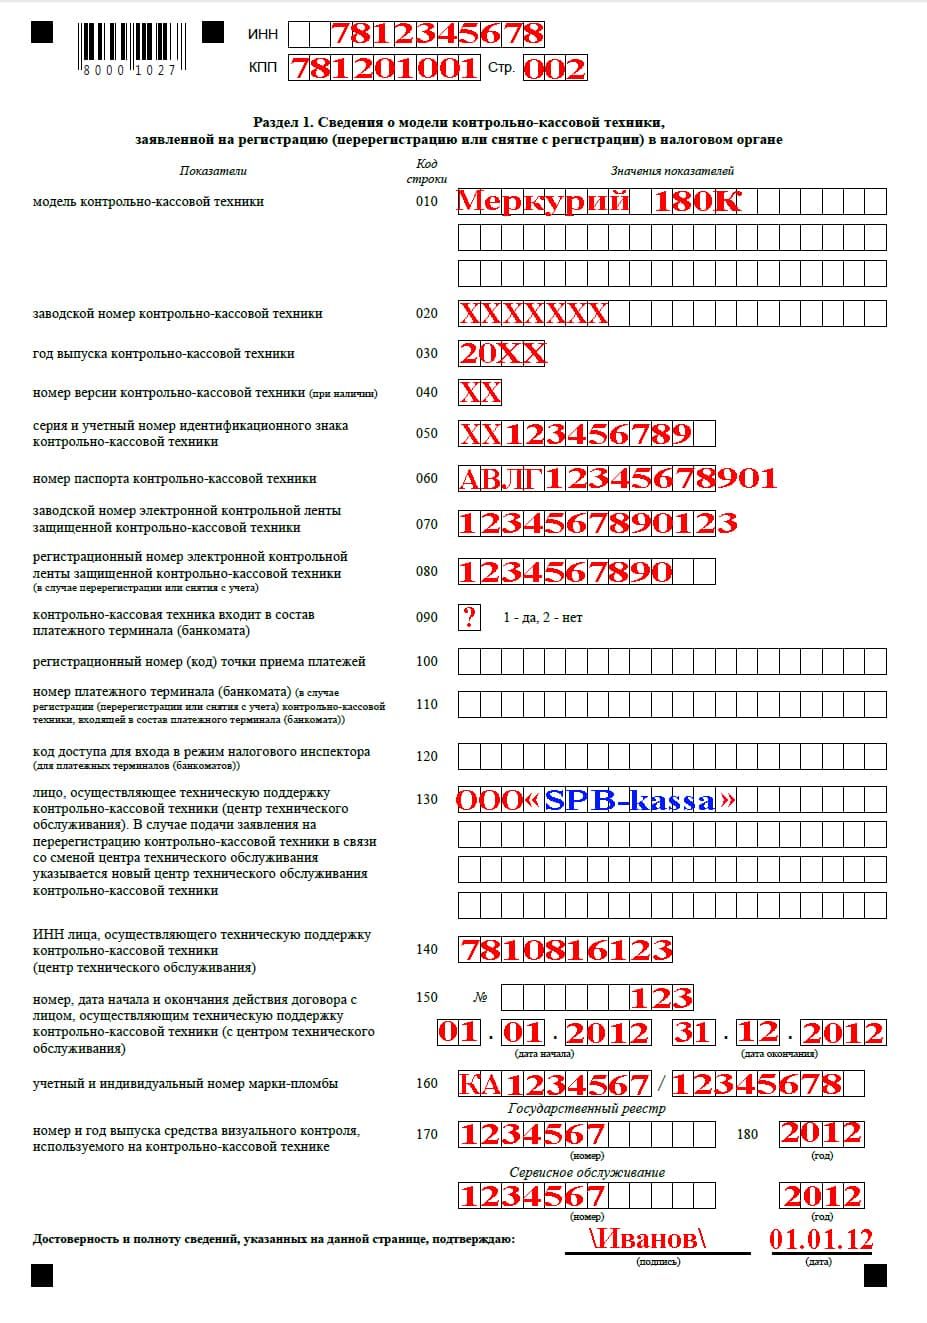 Страница 2 заявления о регистрации ККМ